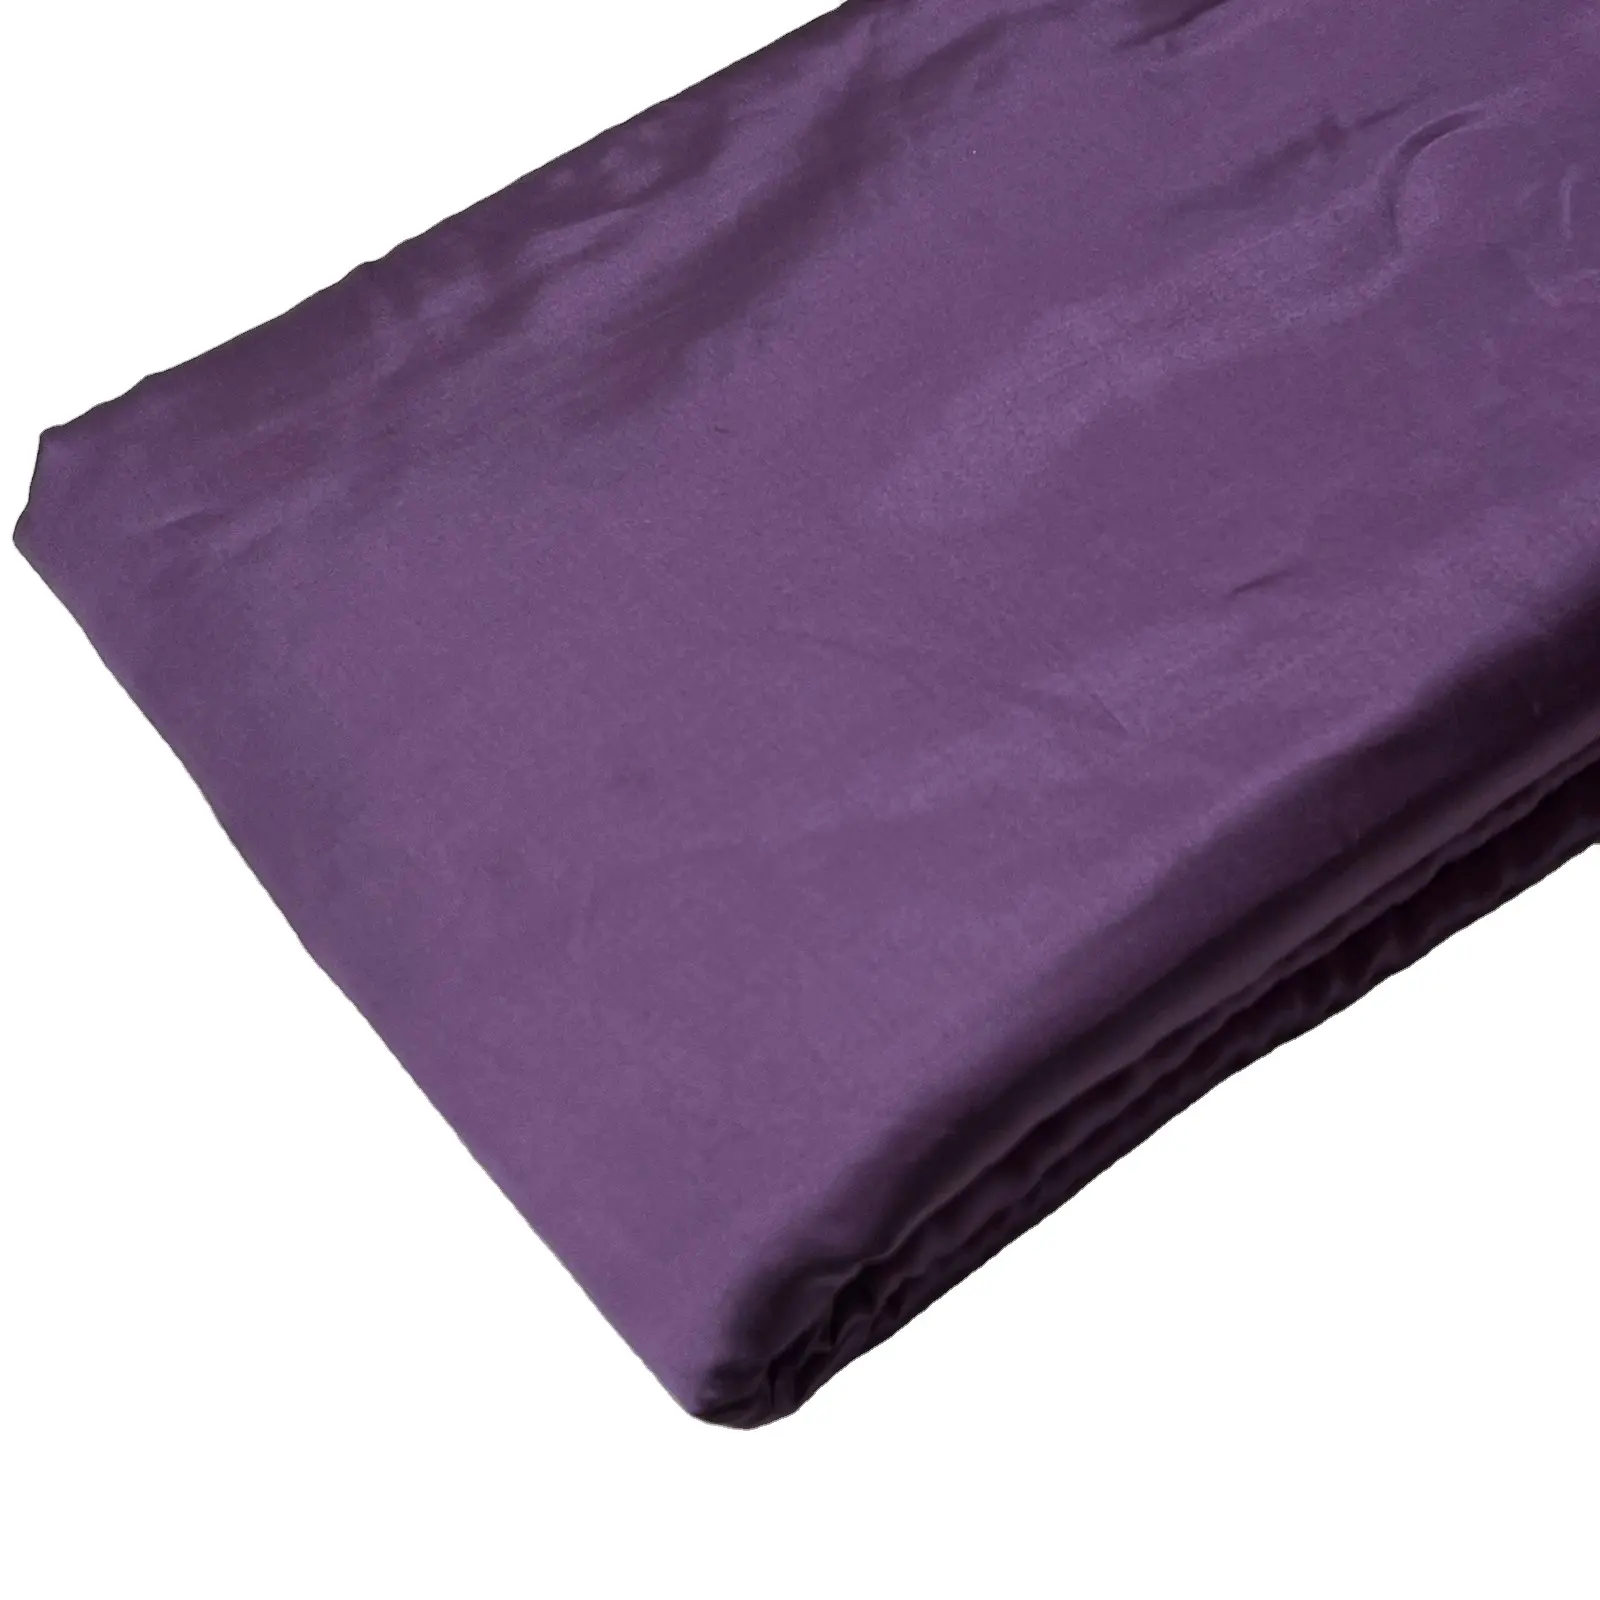 Kadın giysileri yastık kapakları ve elbise için koyu afrika renk düz Polyester kumaşlar